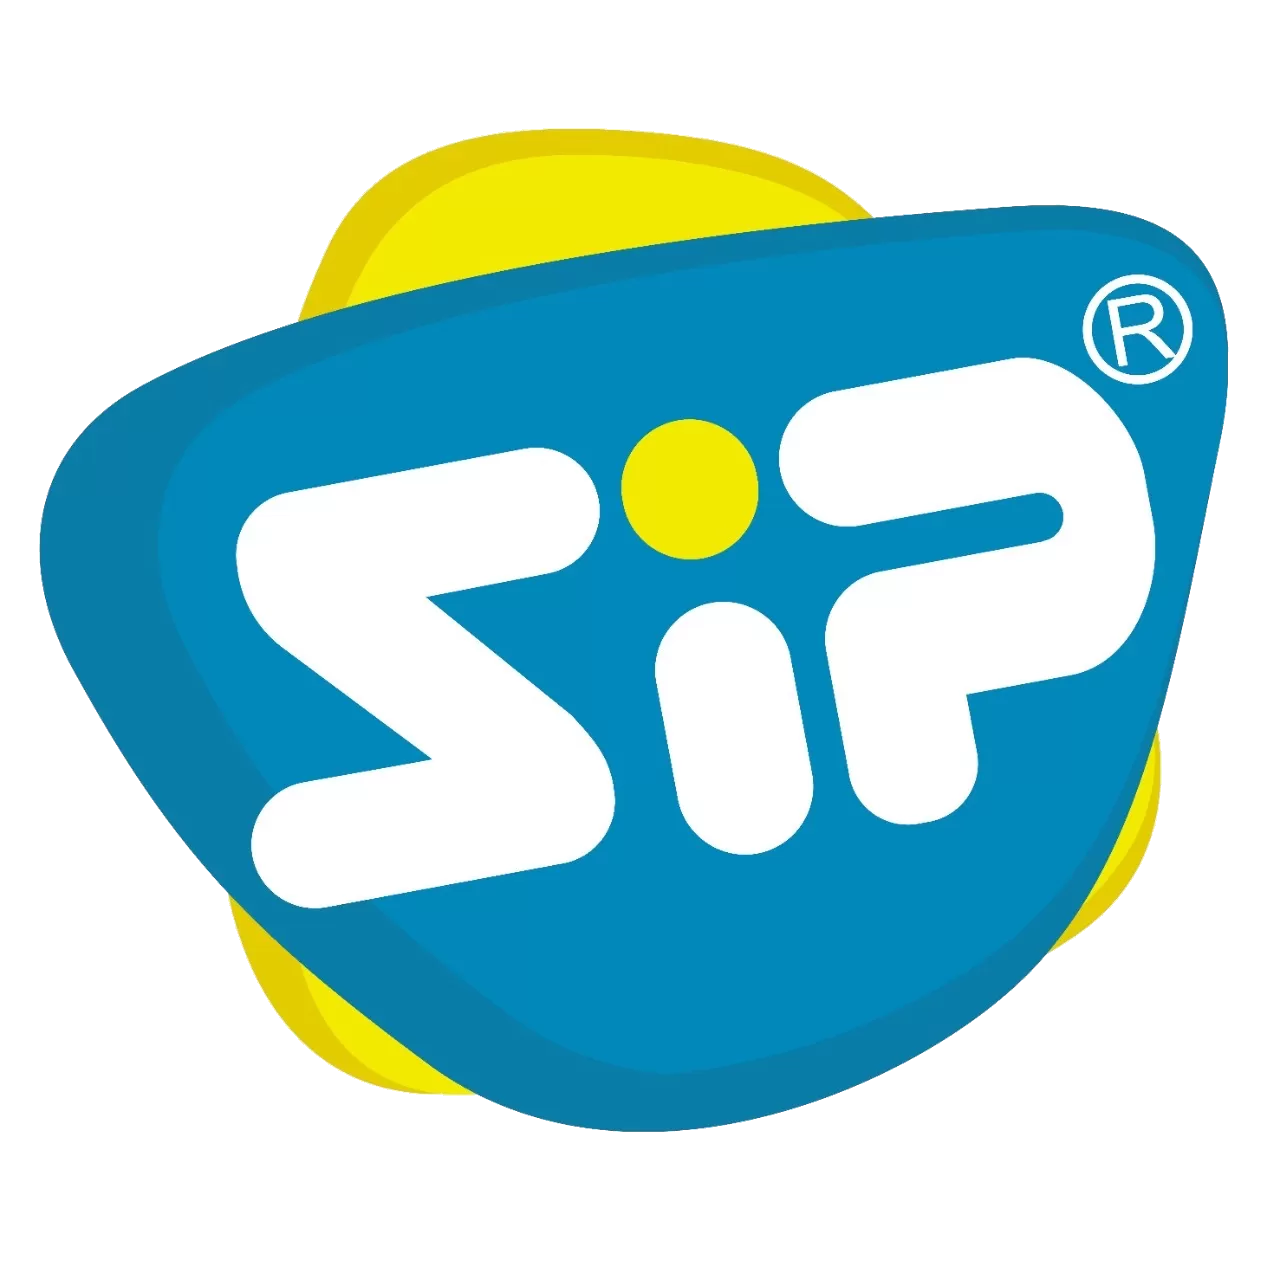 SMKSIP.com